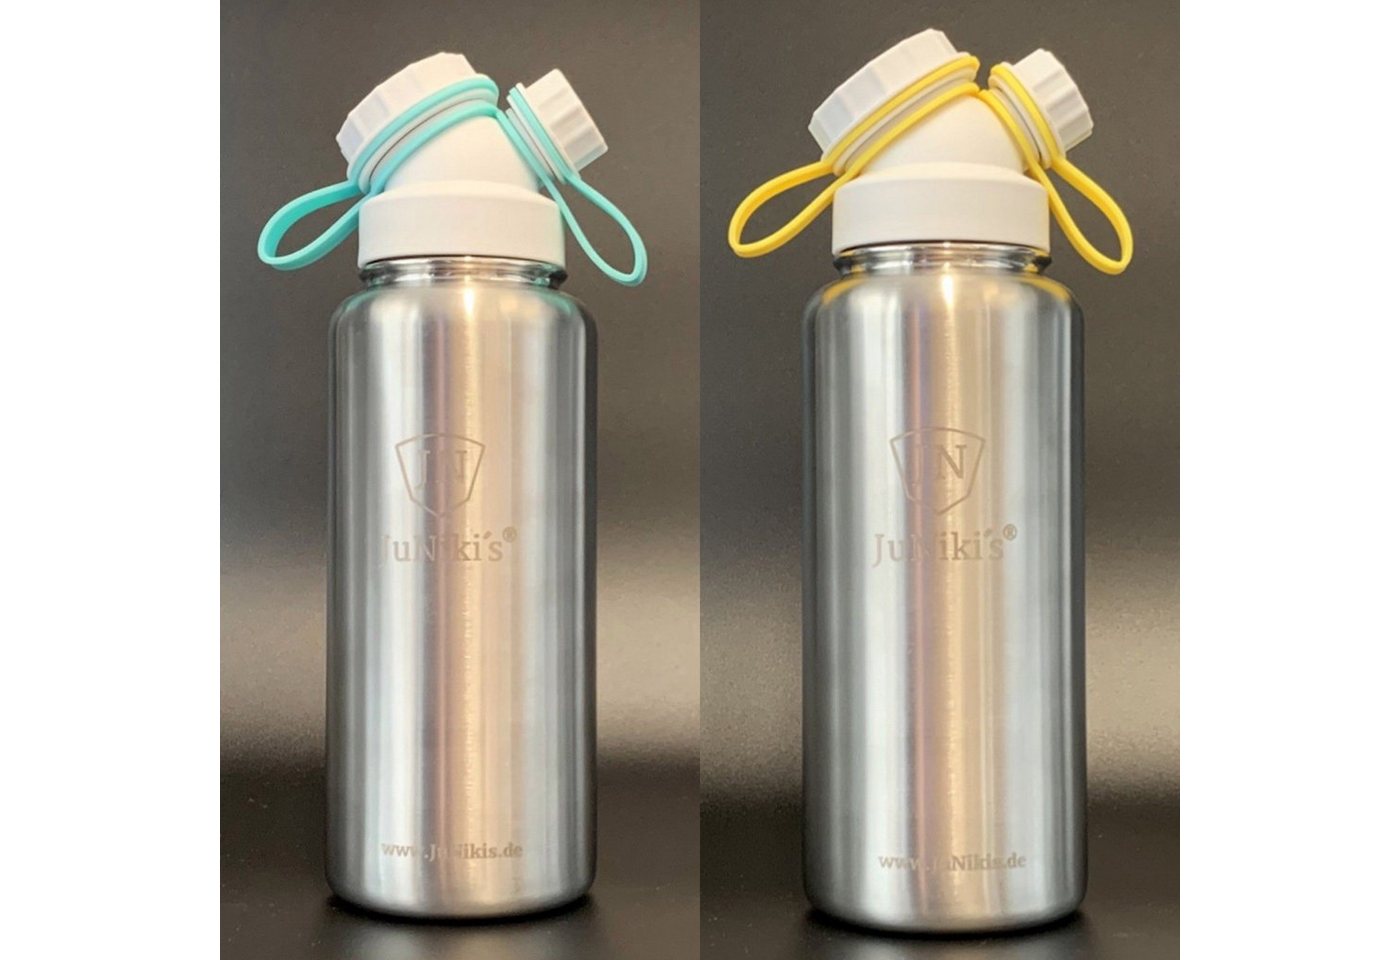 JN JuNiki´s Isolierflasche Vakuum-isolierte Edelstahl Sportlerflasche mit 1 Liter Volumen mit Deckelhaltern in Türkis + Gelb zum Wechseln - Auslaufsicher auch bei Kohlensäure & Geschirrspüler-tauglich, Besonders alltagstauglich, vom Erfinder des Double Neck® Deckels (Patent pending), Teefilter ergänzbar von JN JuNiki´s